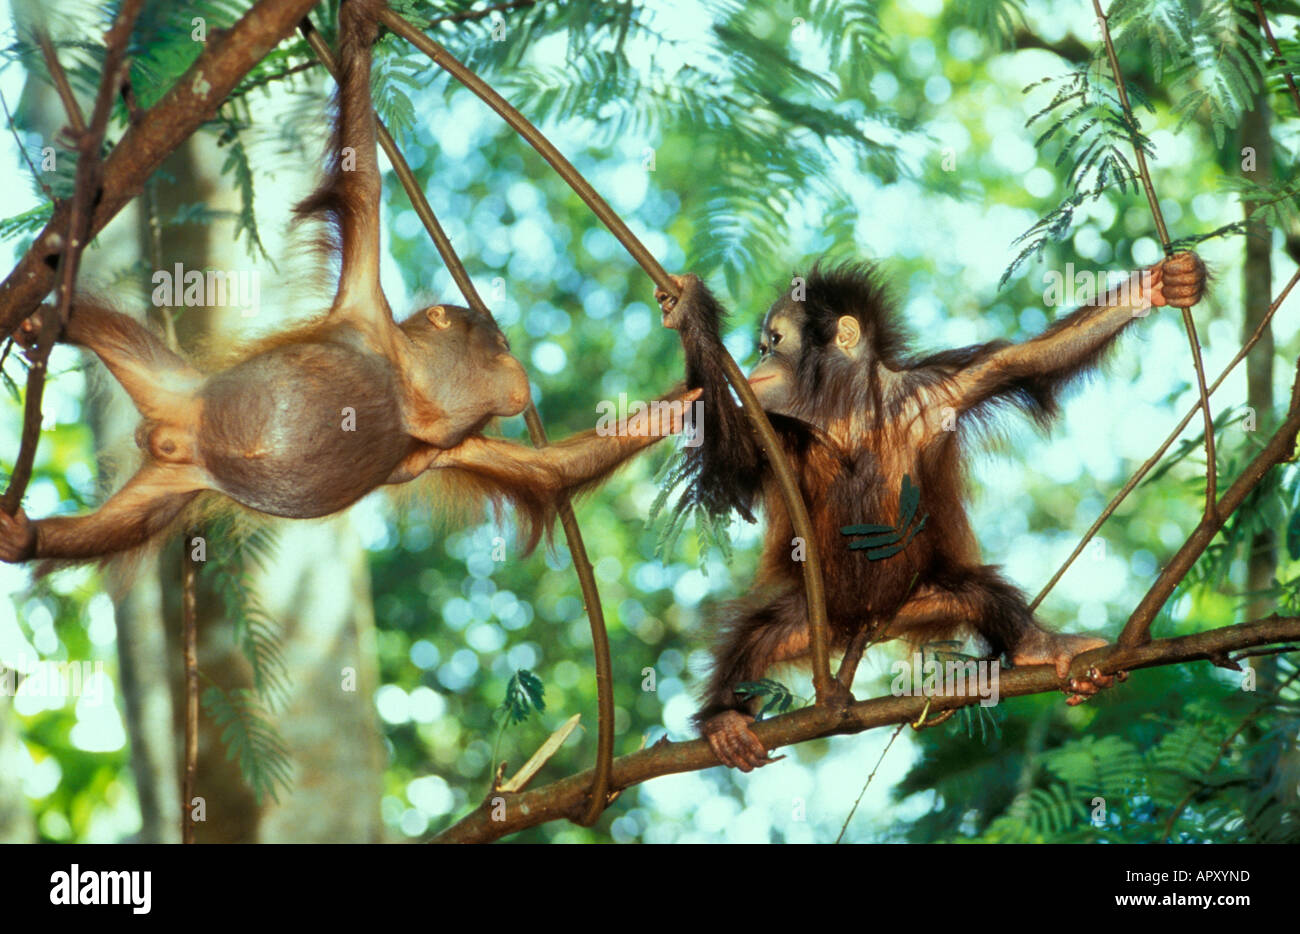 Deux bébés dans les arbres l'orang-outan, Pongo pygmaeus, parc national de Gunung Leuser, Sumatra, Indonésie, Asie Banque D'Images